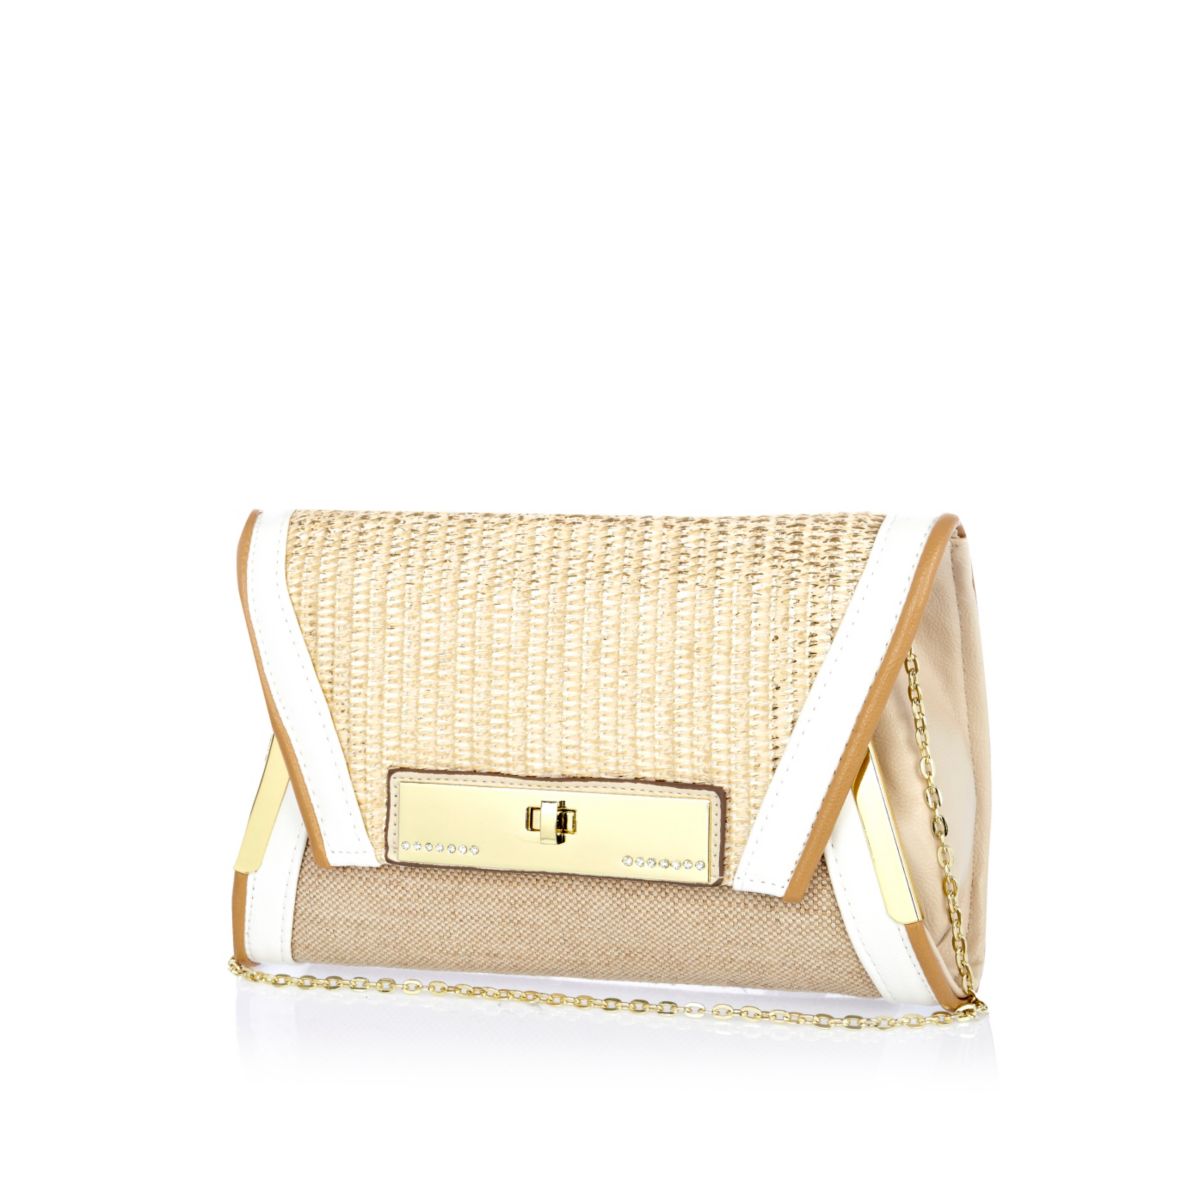 Gold contrast woven panel envelope clutch bag - Bags & Purses - Sale ...